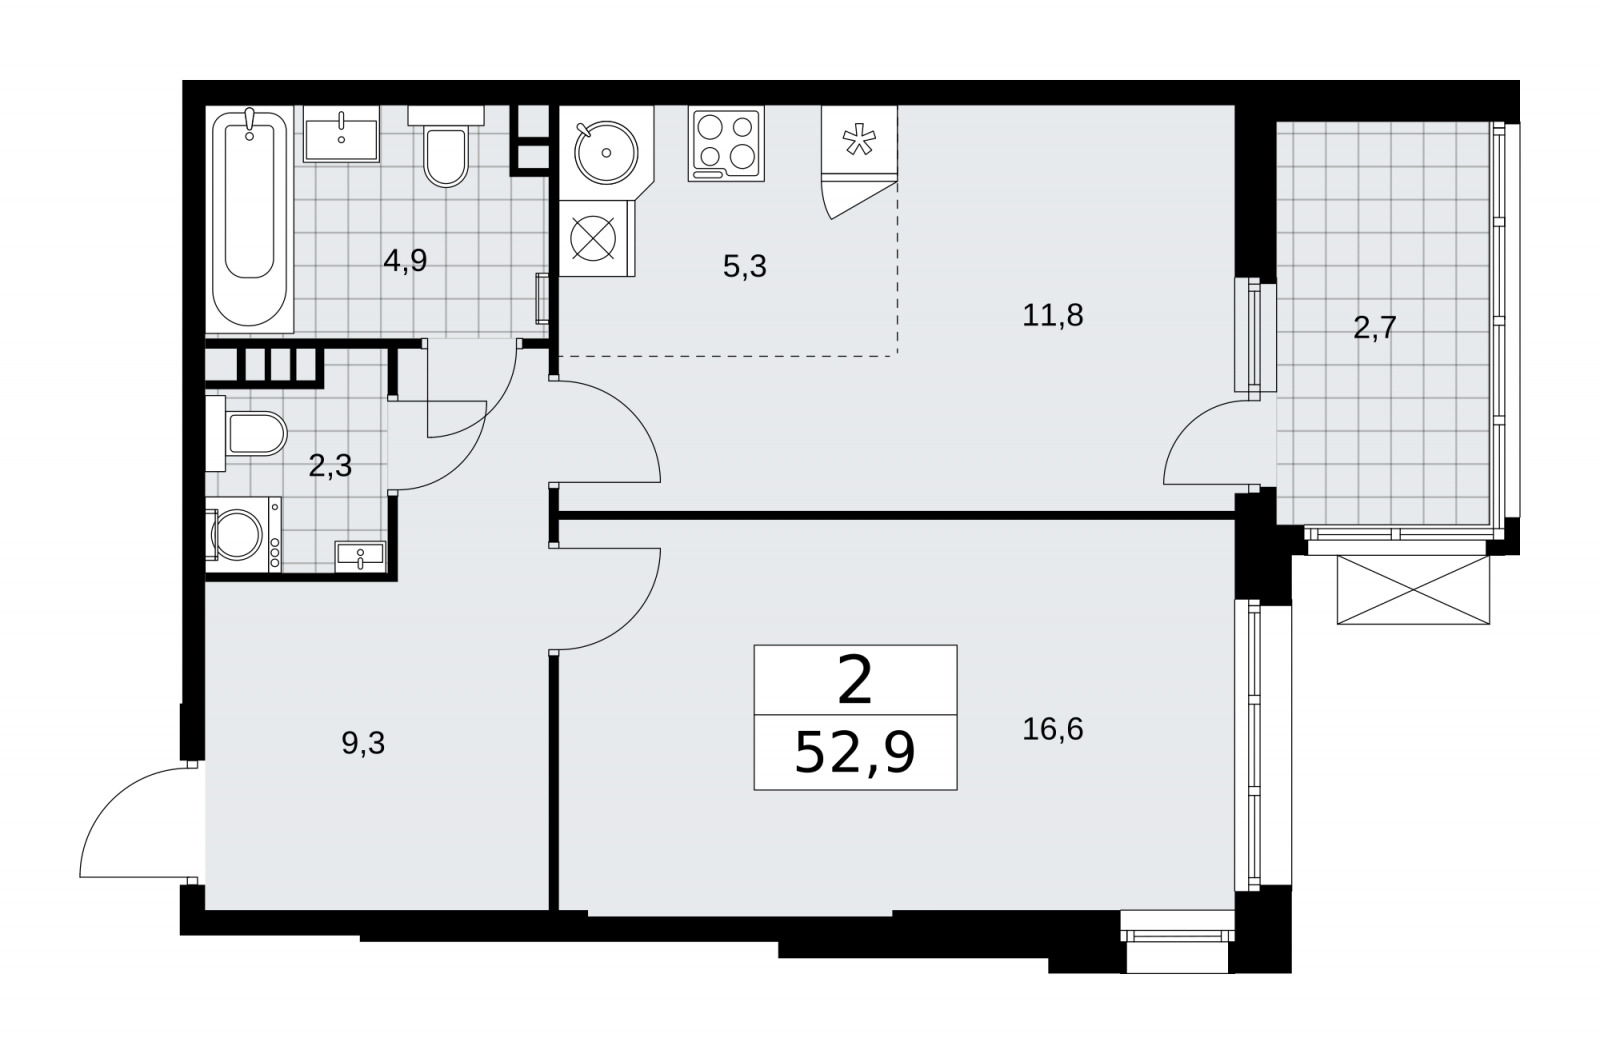 Продается 2-комнатная квартира с европланировкой в новом жилом комплексе, метро рядом